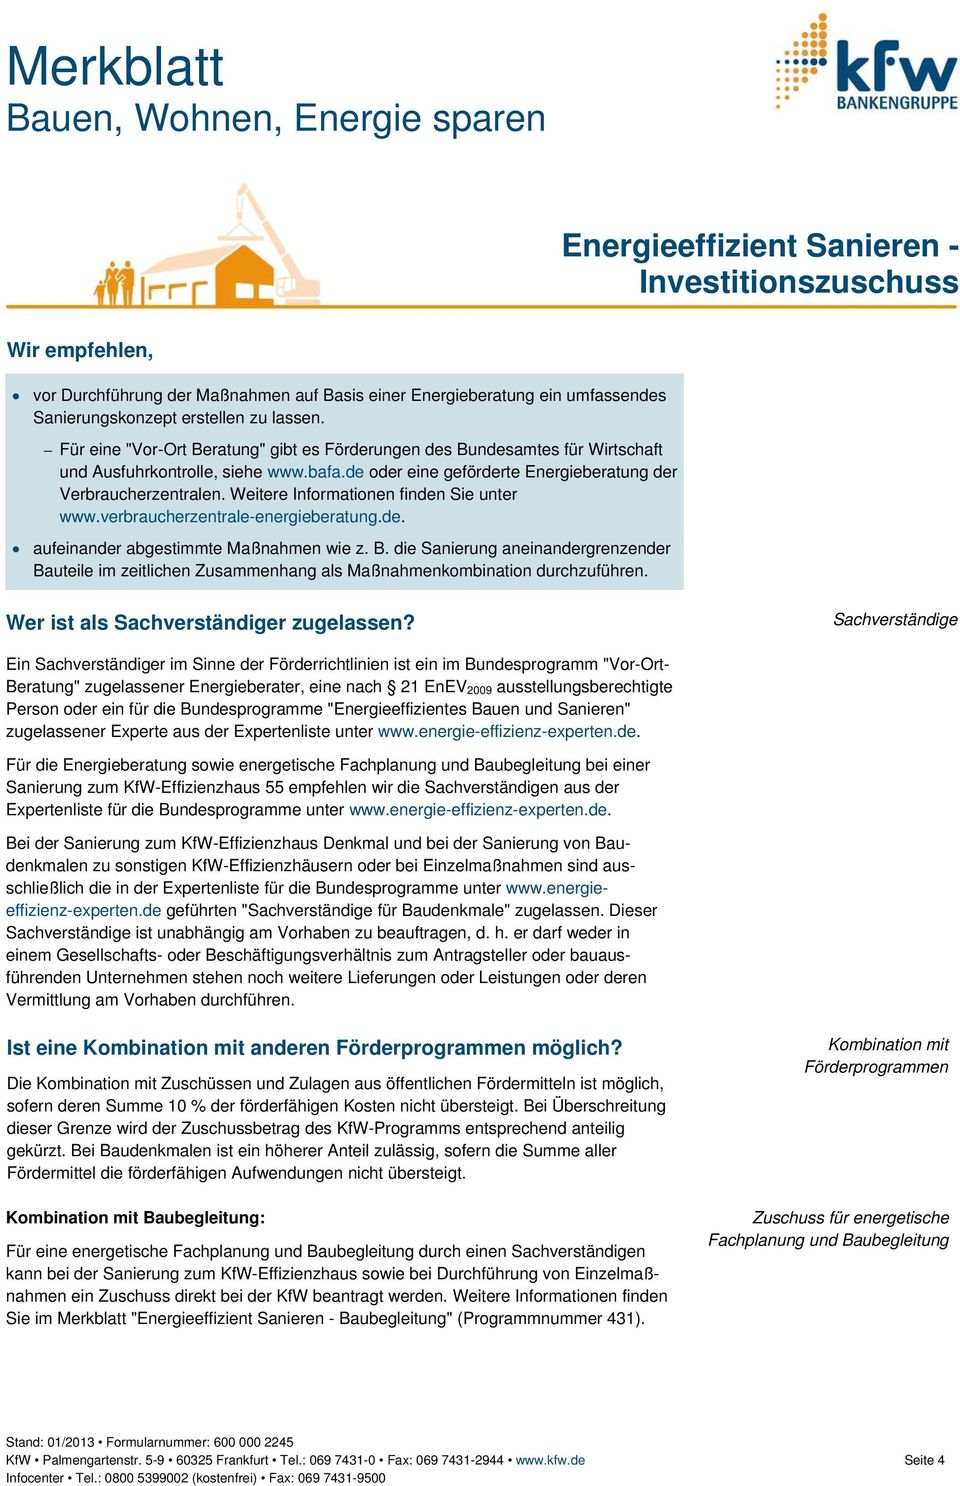 Weitere Informationen finden Sie unter www.verbraucherzentrale-energieberatung.de. aufeinander abgestimmte Maßnahmen wie z. B.